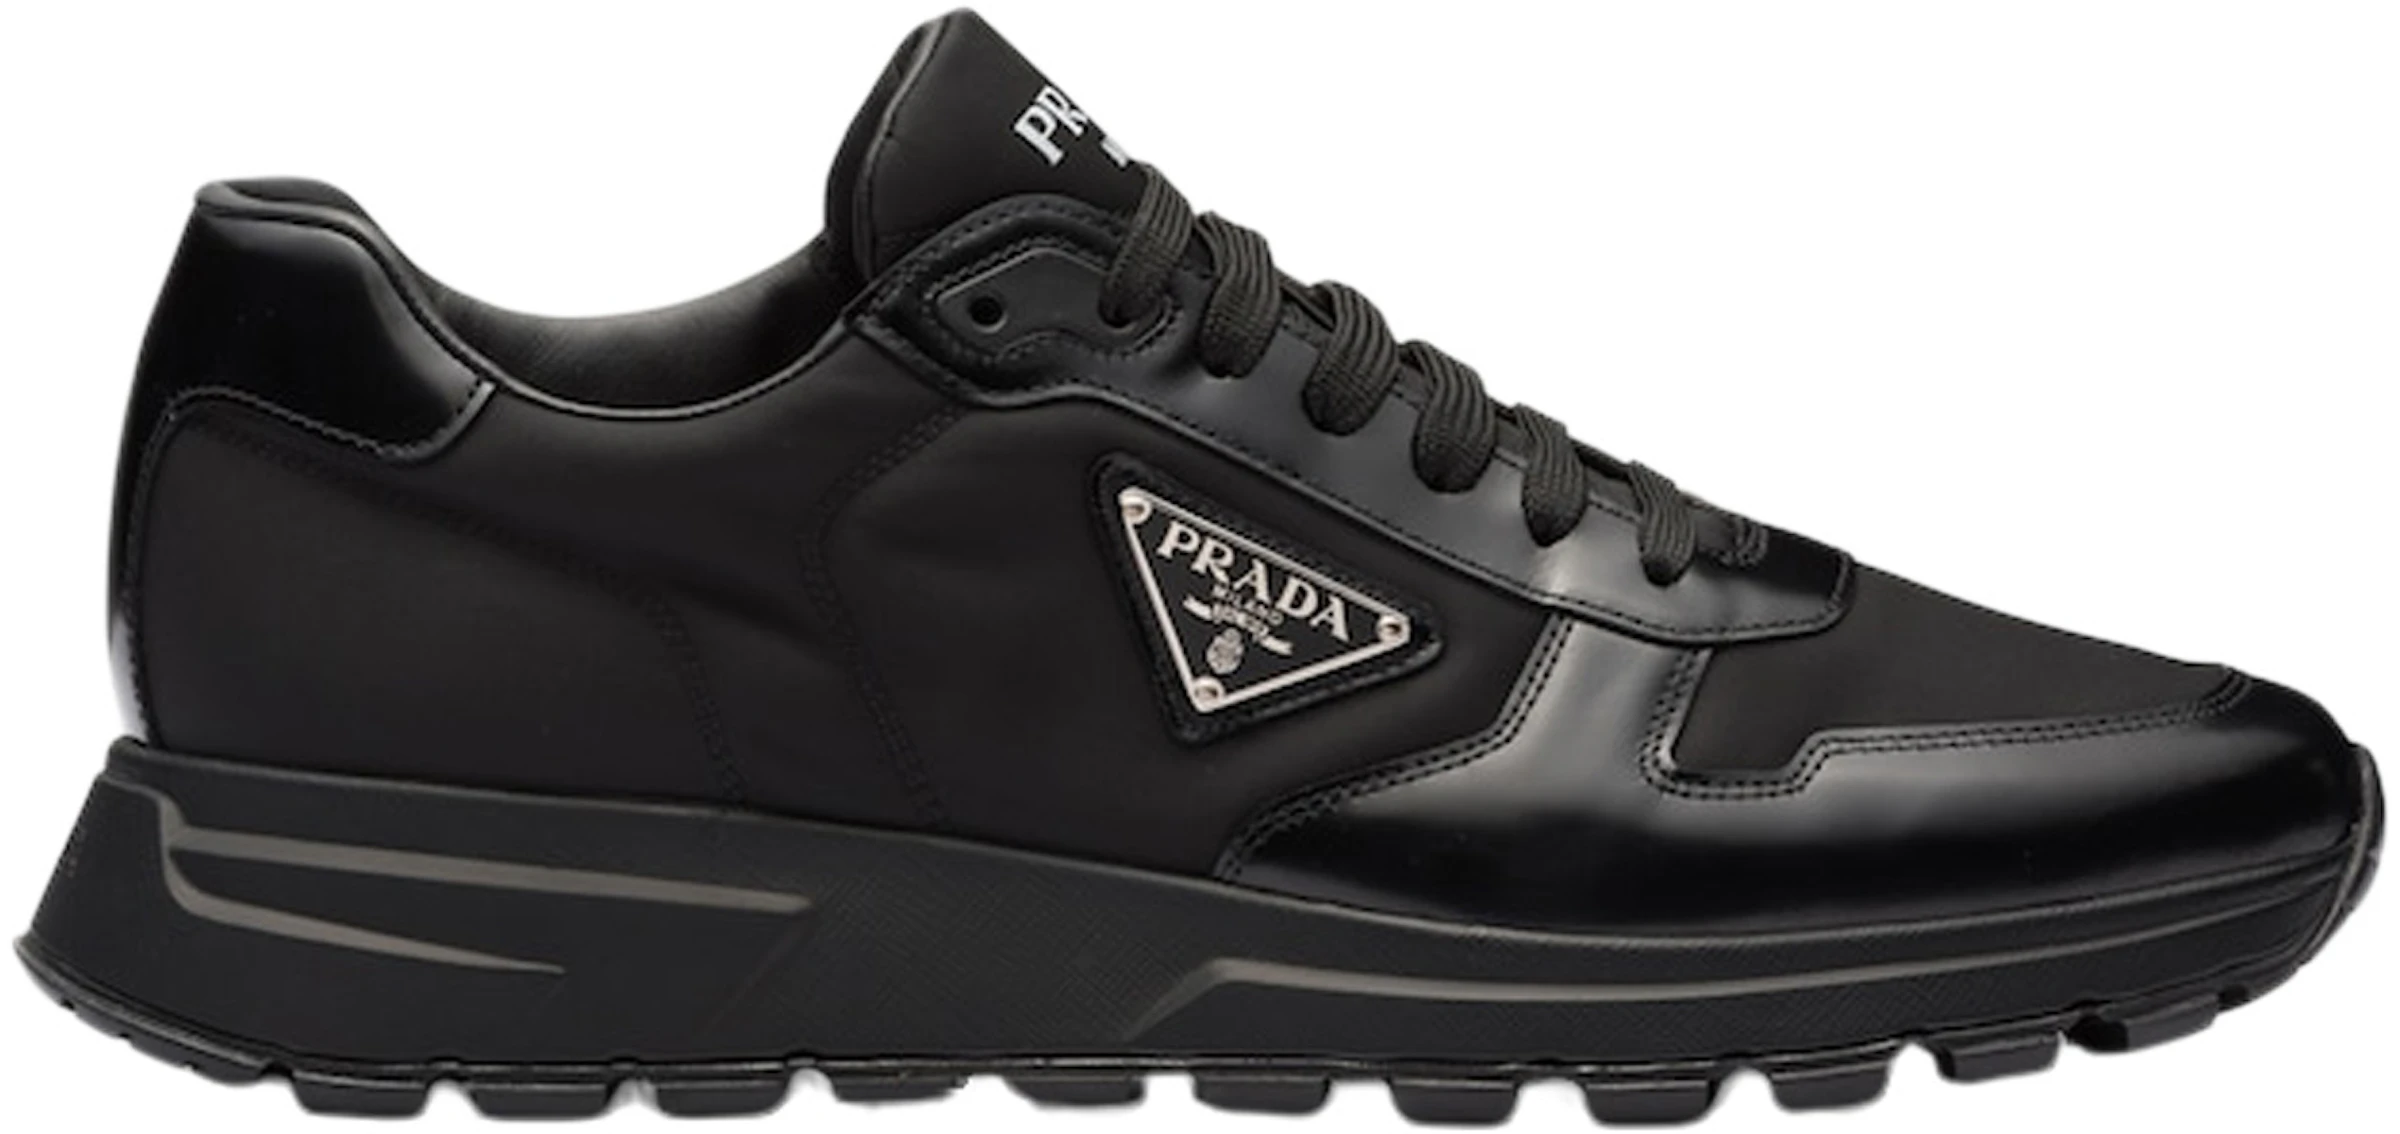 multifunctioneel limoen wasserette Prada PRAX 01 Sneakers Re-Nylon Brushed Leather Black Black -  2EE369_3LF5_F0632_F_G000 - US